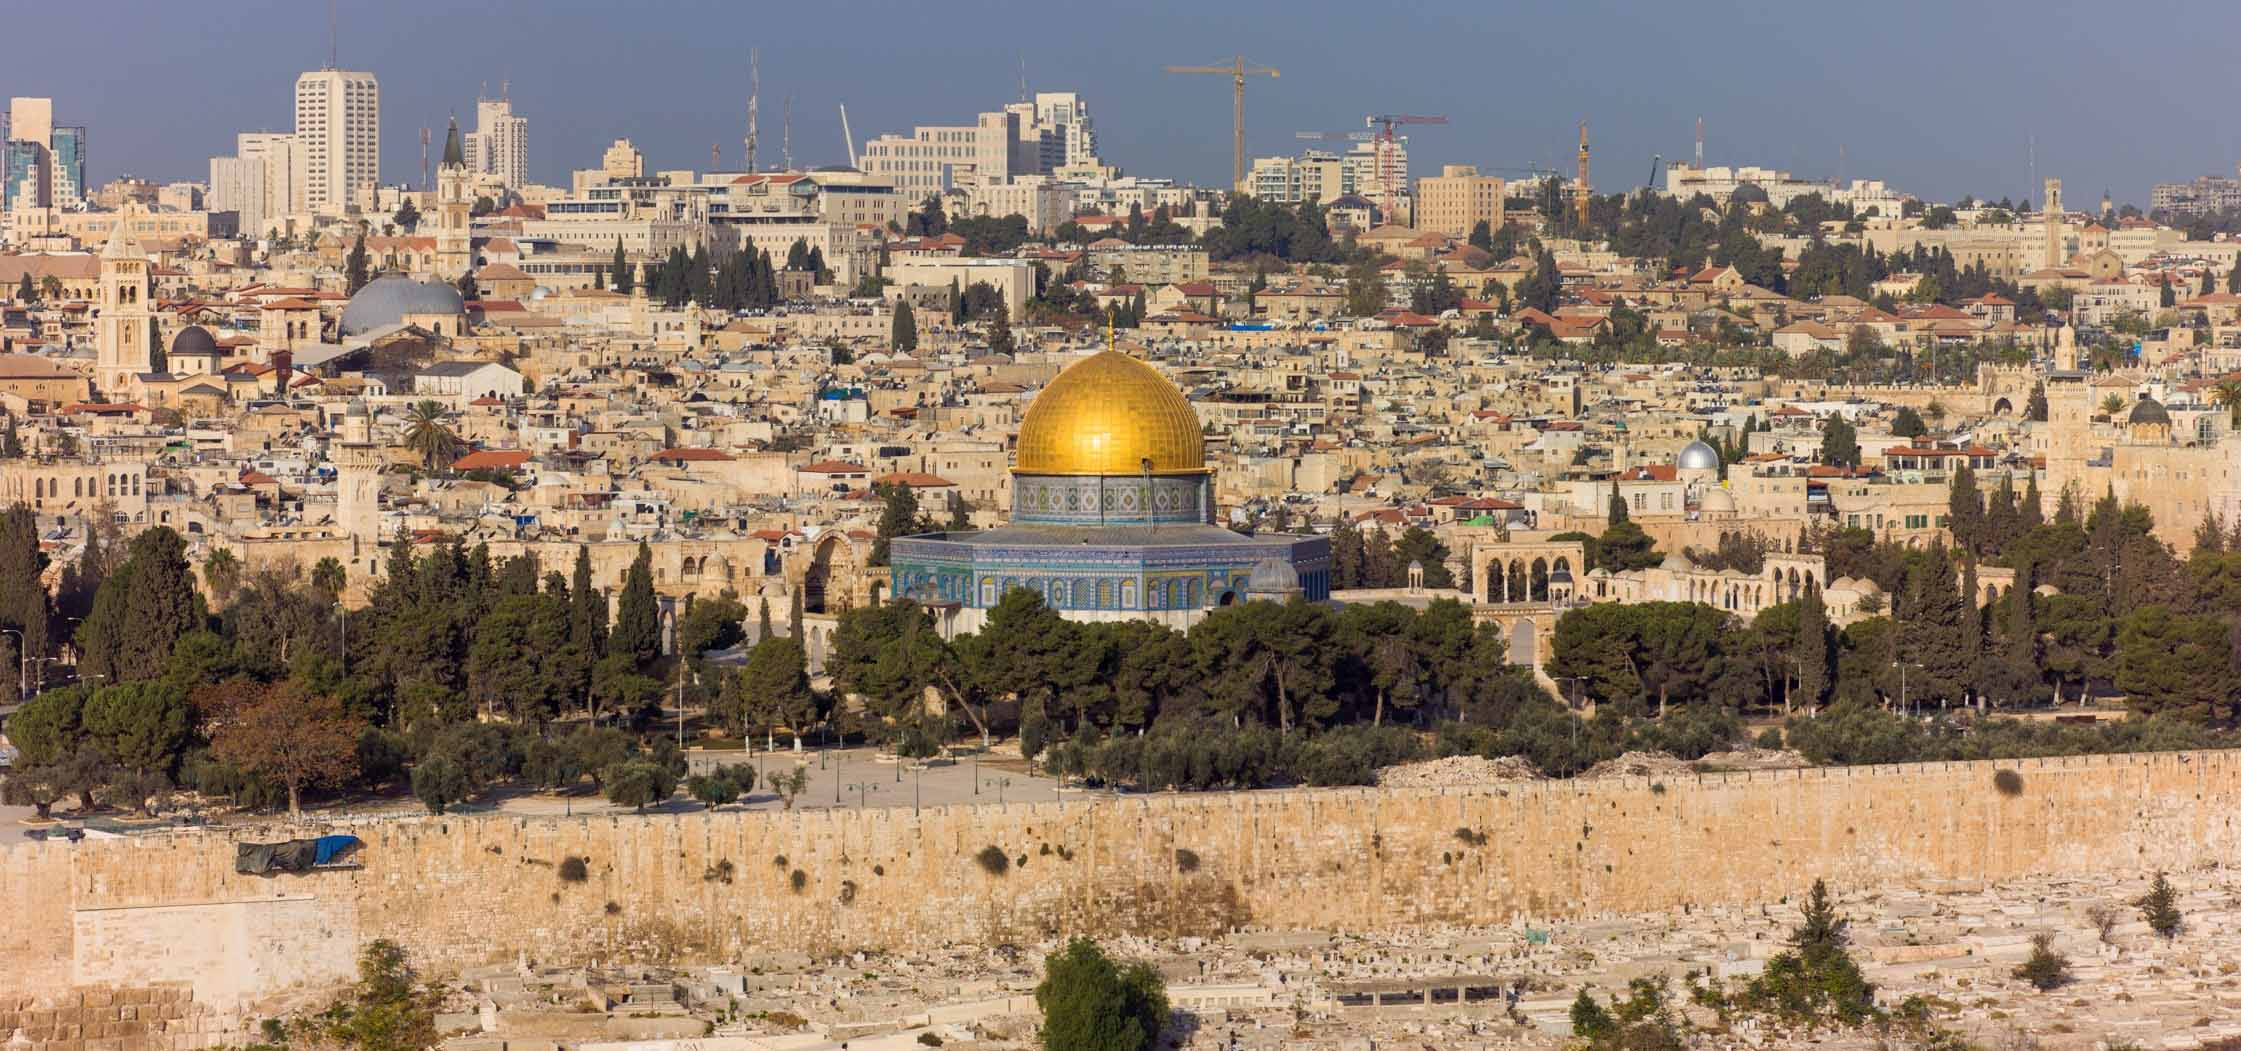 La Ciudad Antigua de Jerusalén vista desde el Monte de los Olivos con la Cúpula de la Roca dorada en el centro. El monte bíblico es hoy centro de disputas entre cristianos, judíos y musulmanes.